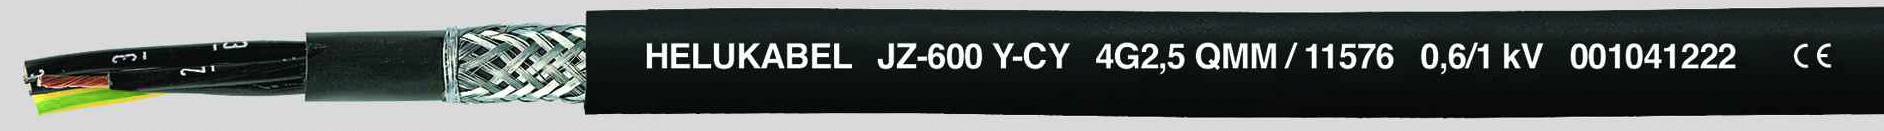 HELUKABEL JZ-600-Y-CY Steuerleitung 3 G 2.50 mm² Schwarz 11575-500 500 m